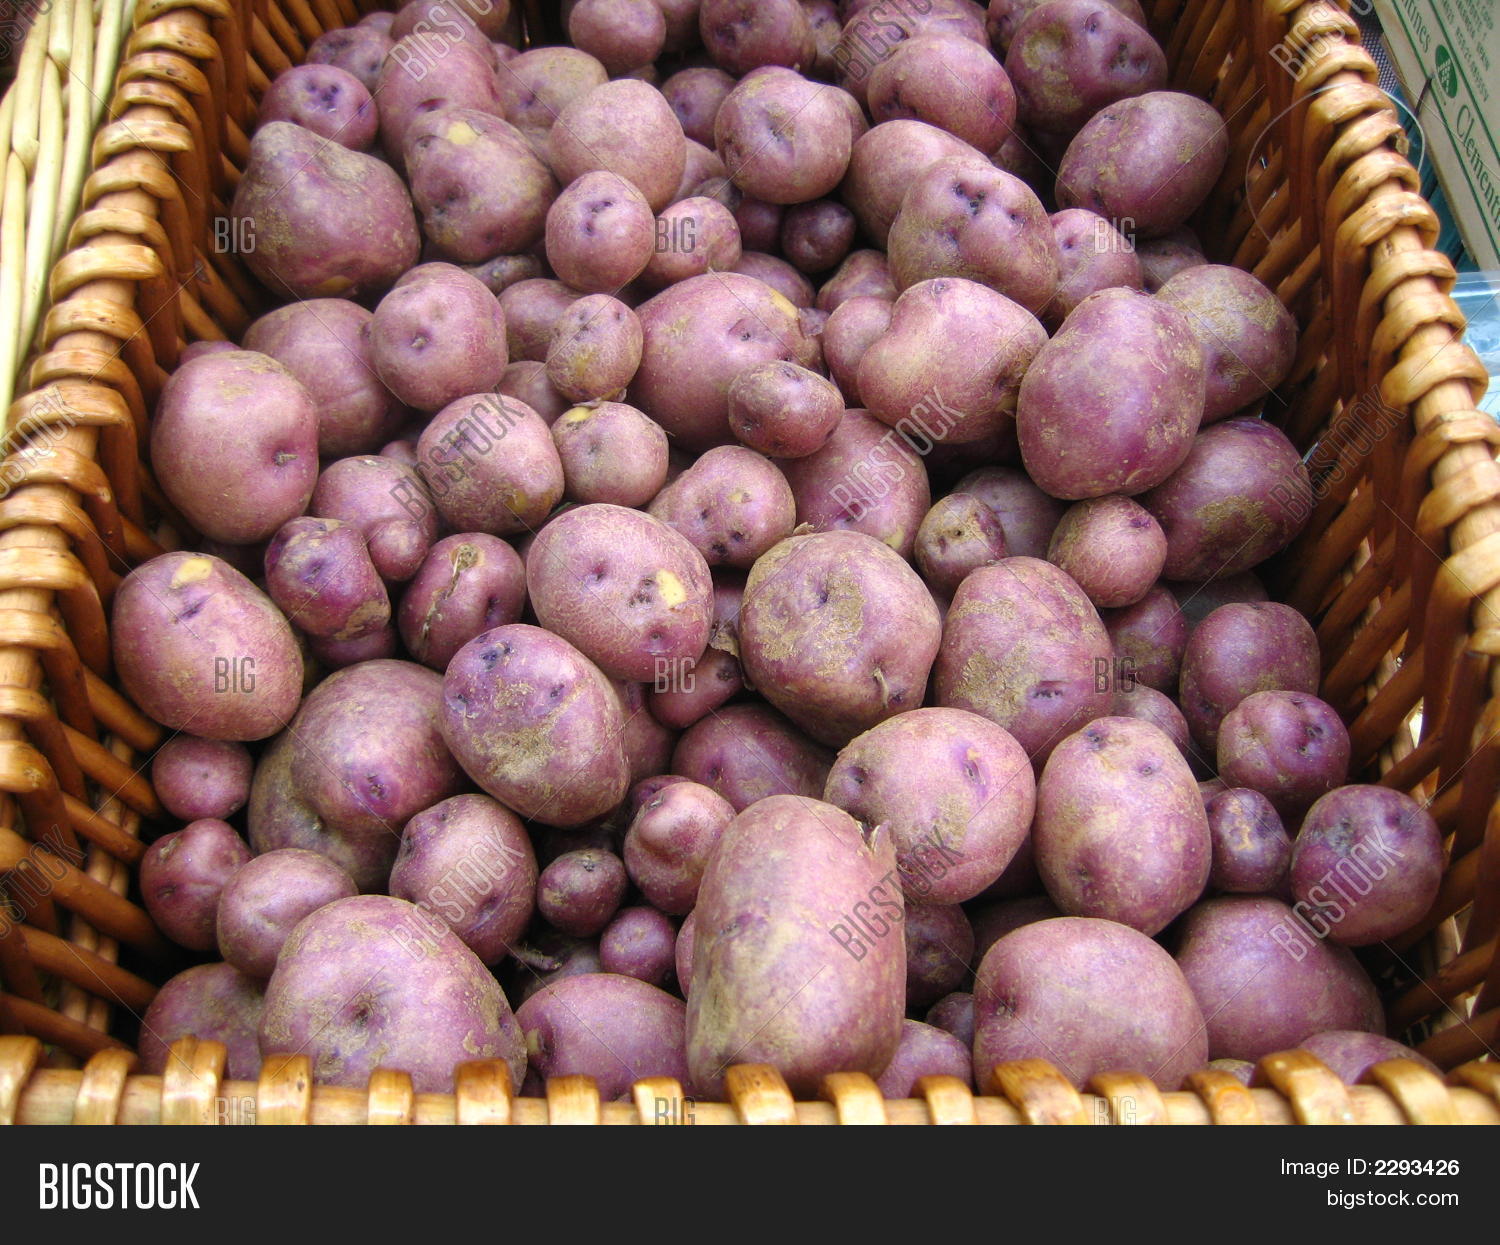 сорта картофеля для подмосковья с фото